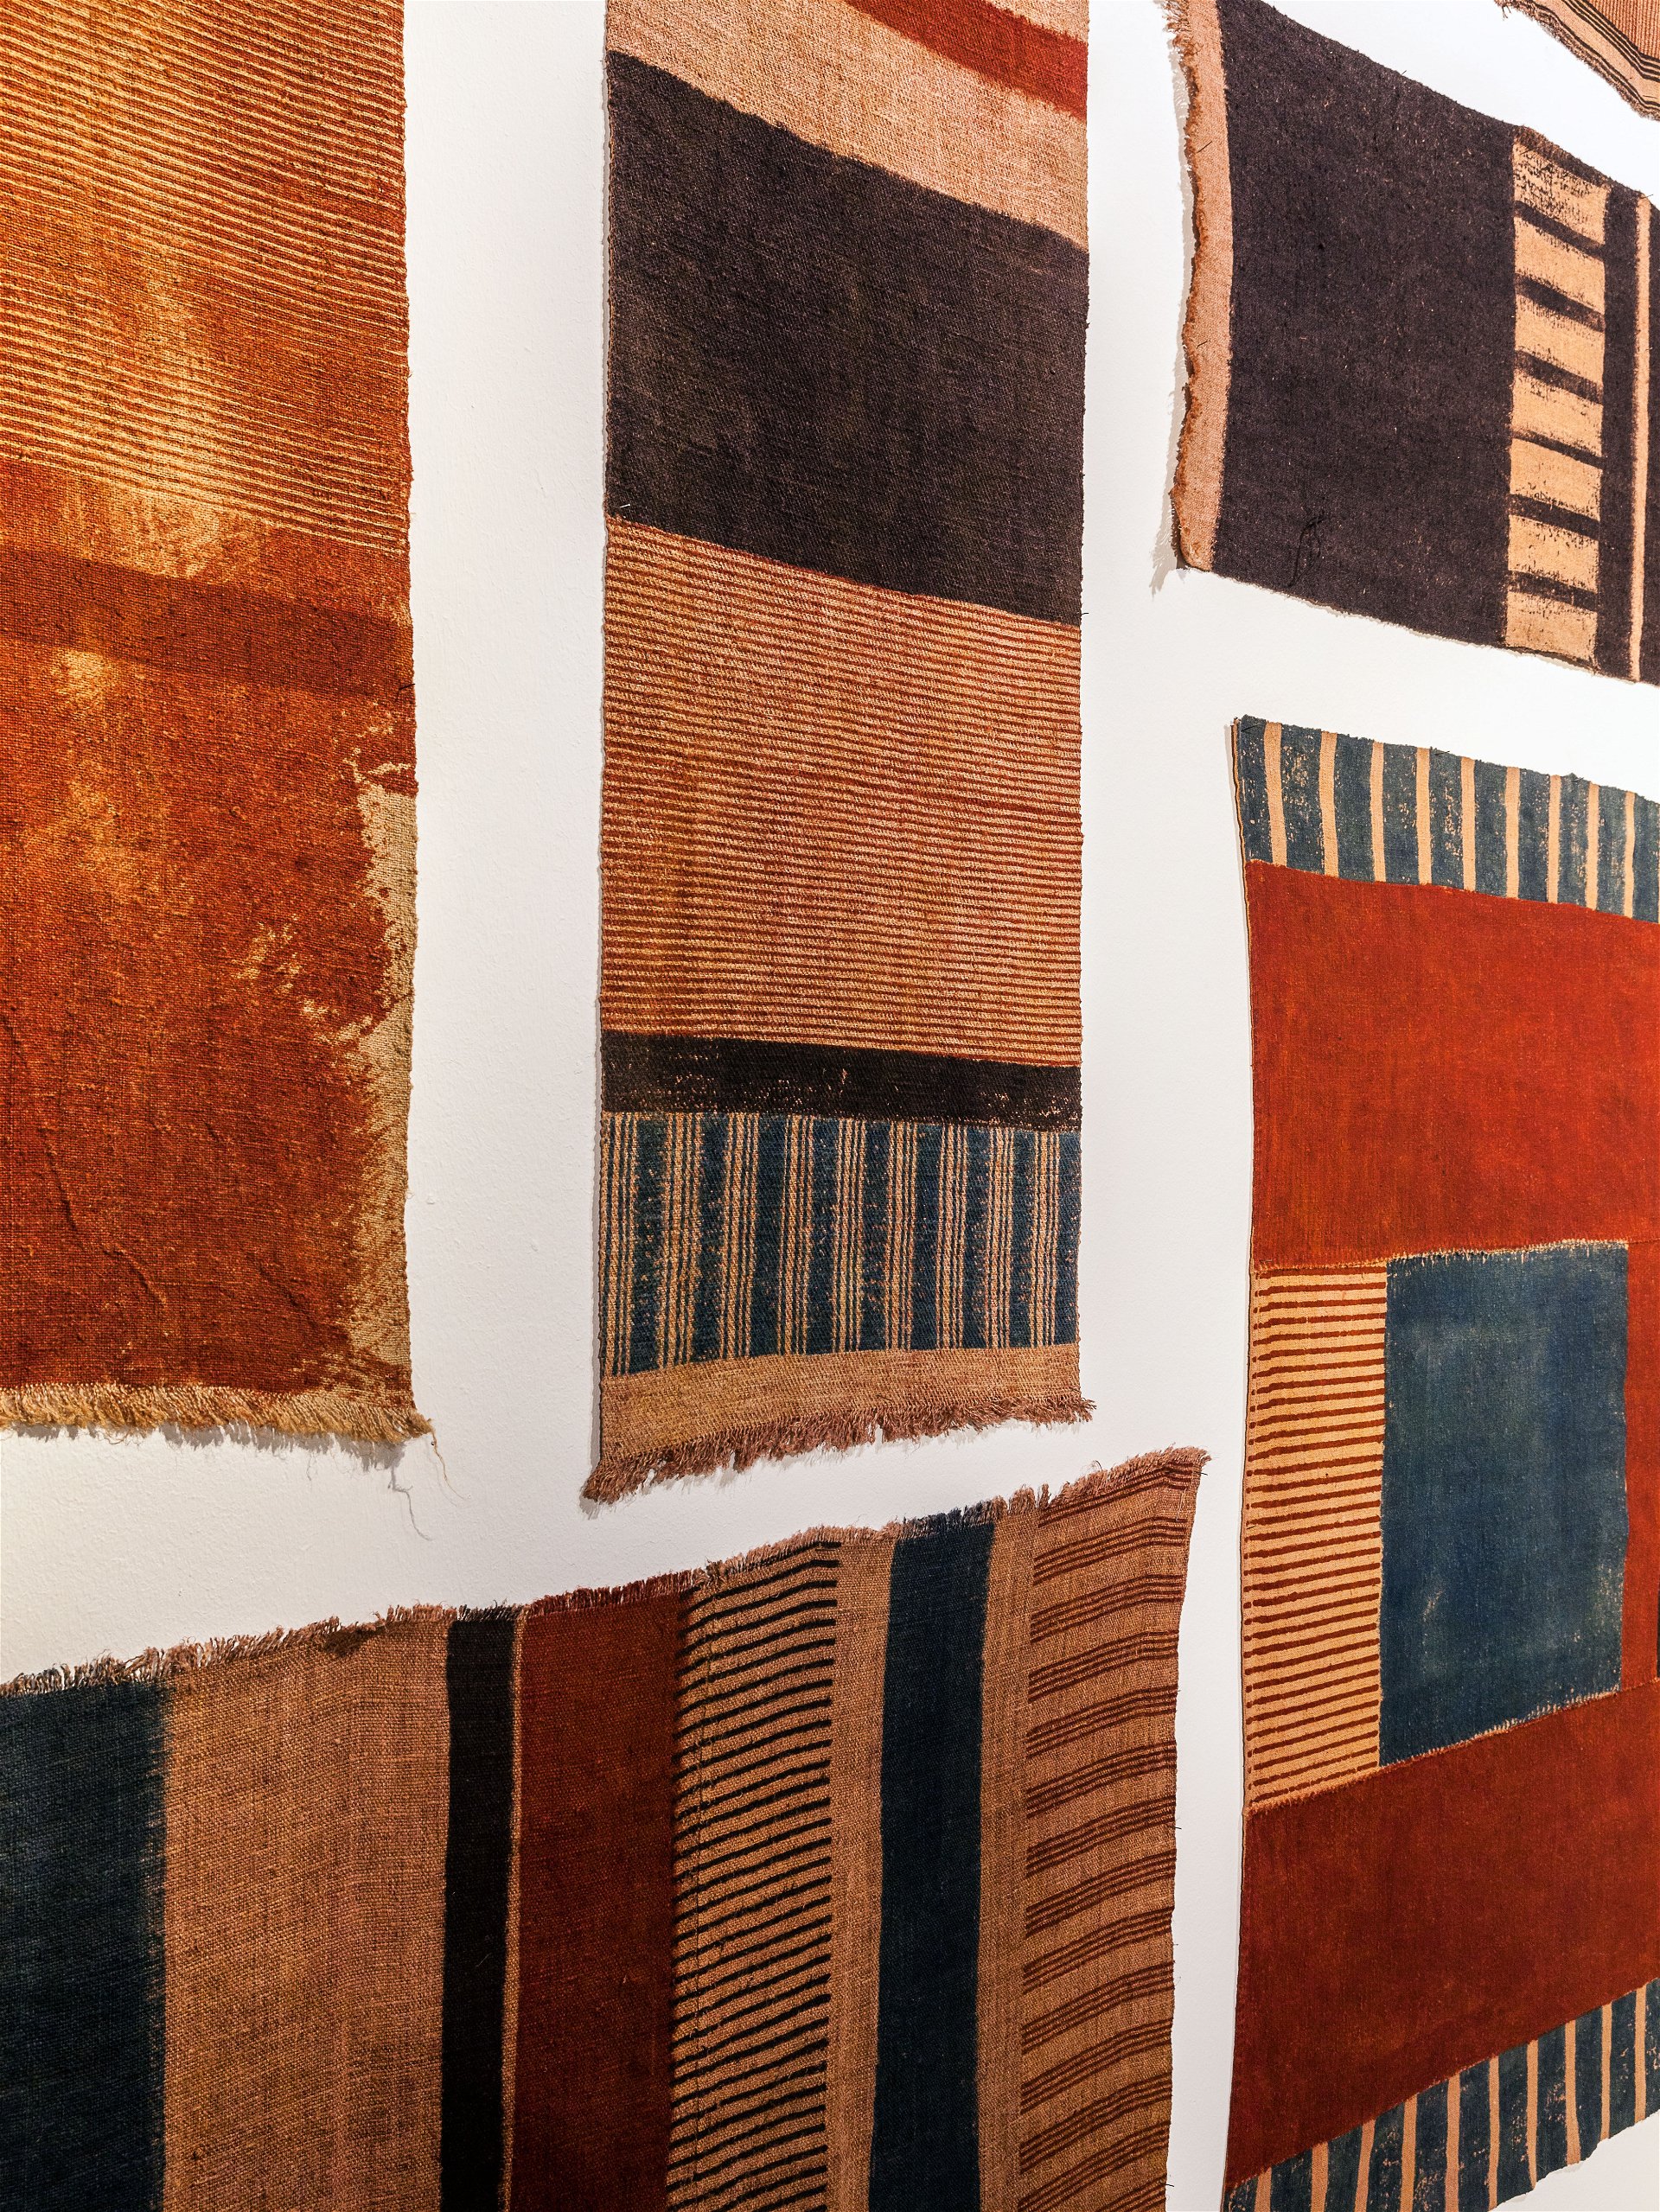 Kunsthandwerk: Kunst und Handwerk verbindet Alexandra Pruscha in ihrer Textilkunst. Ausstellungsansicht, Galerie Rauminhalt, 2020.